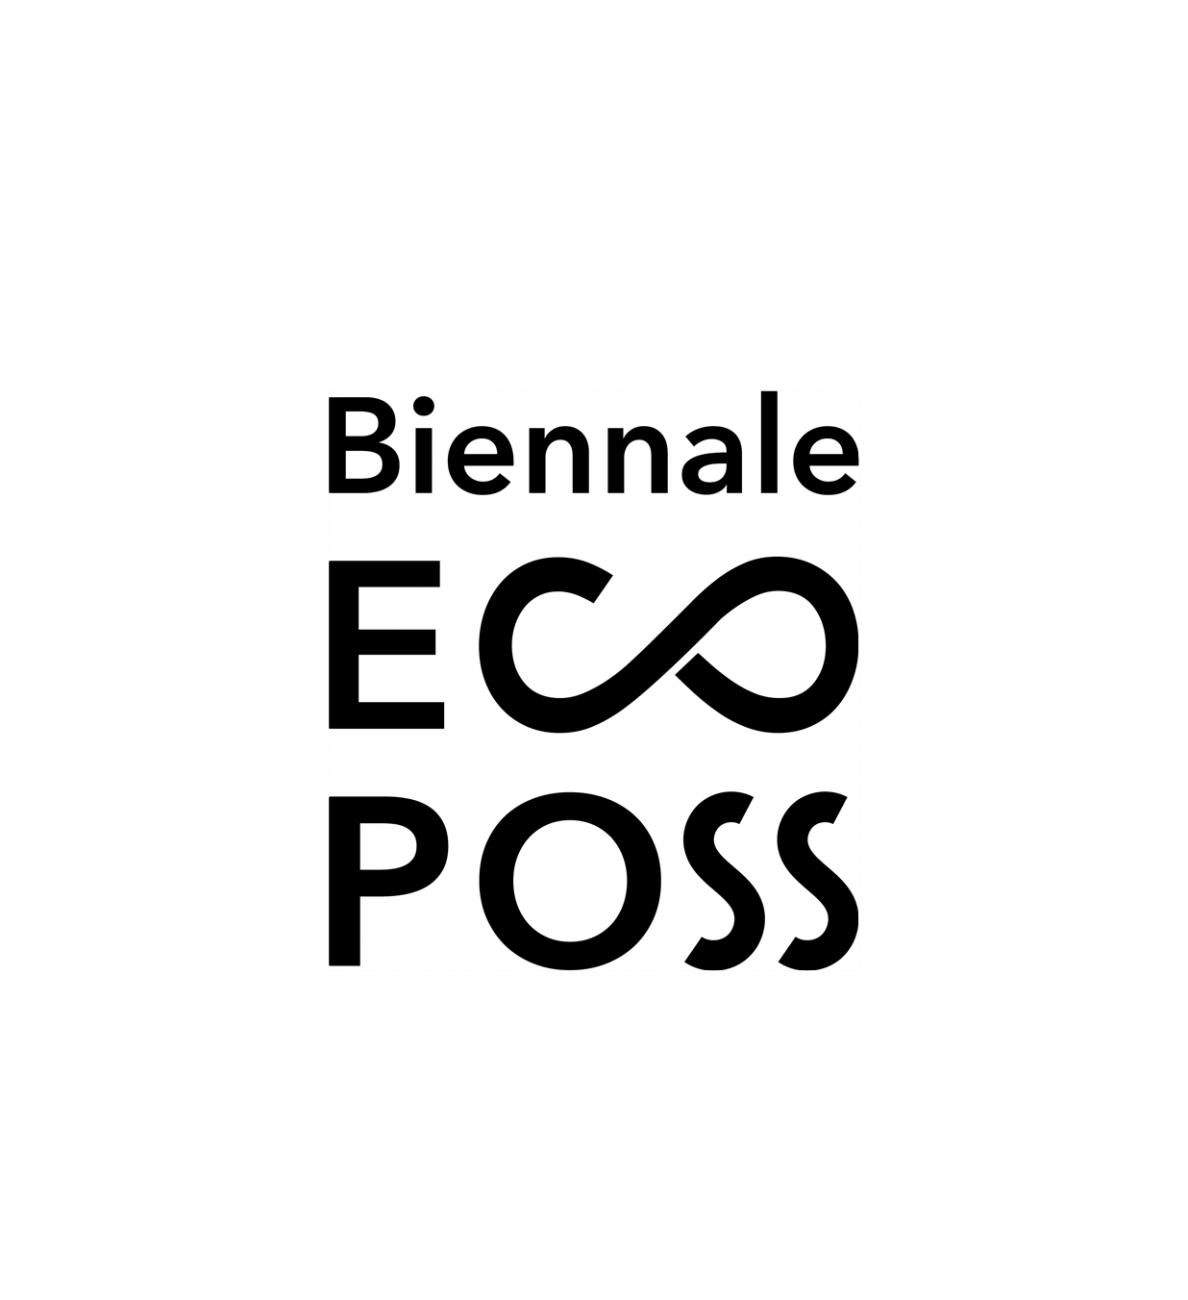 ECOPOSS Biennale